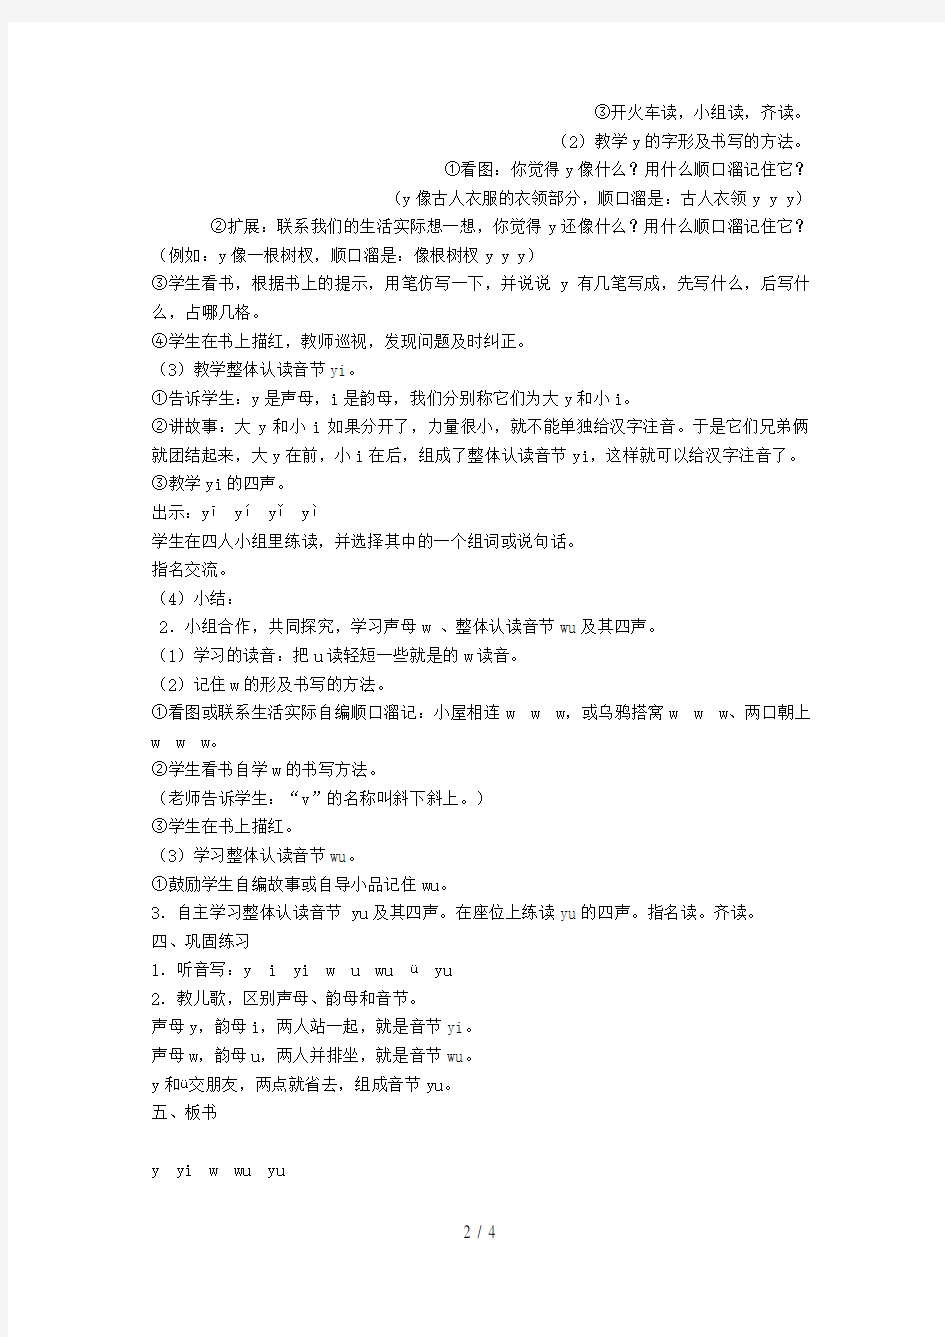 一年级语文上册汉语拼音9《yw》教案苏教版